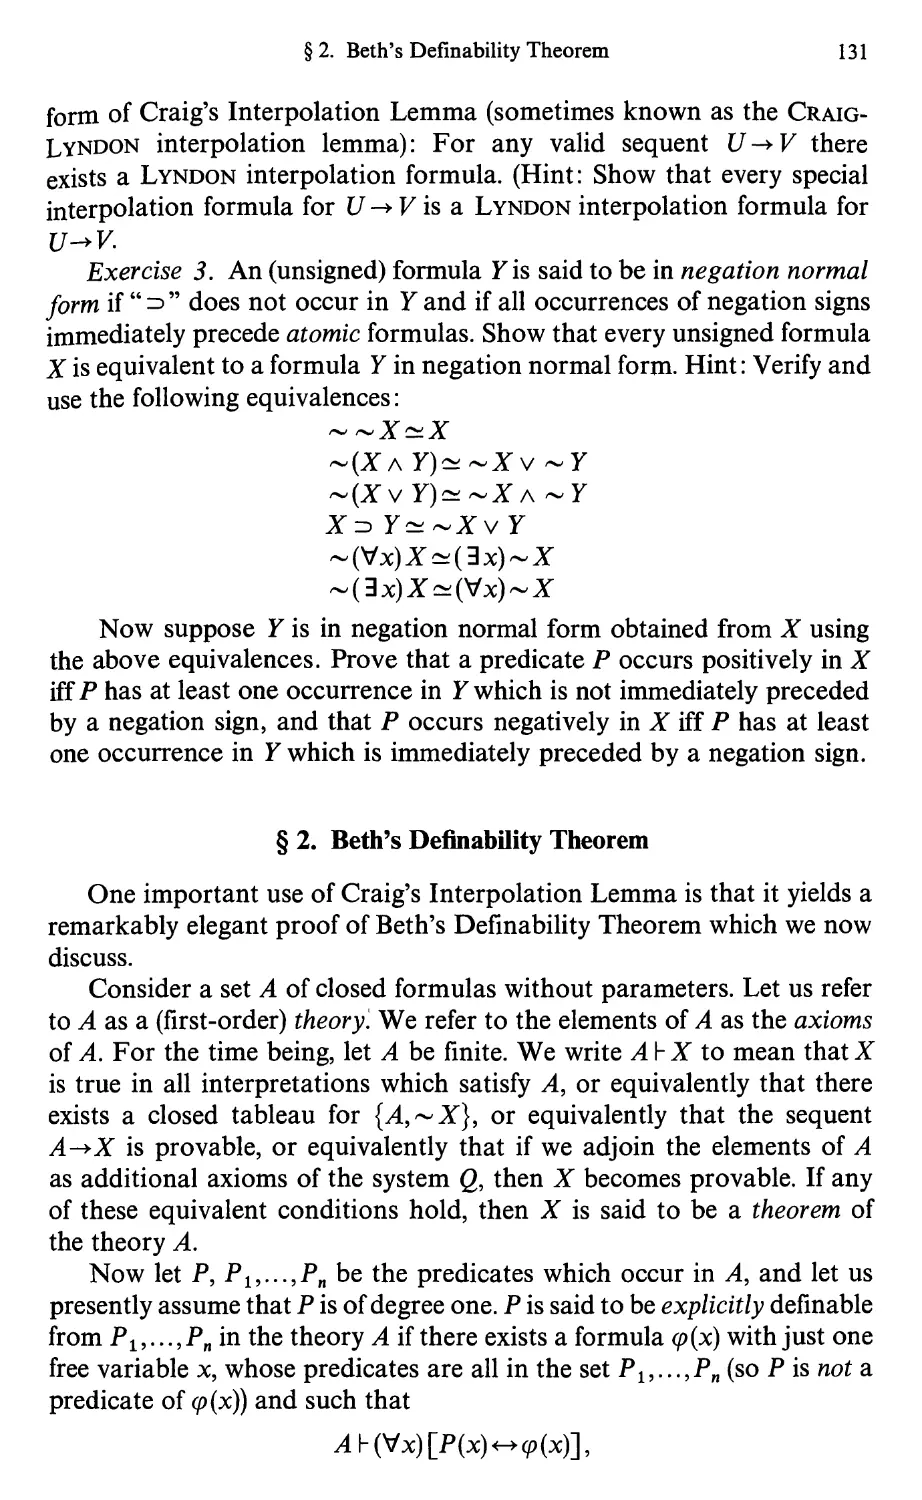 15.2 Beth's Definability Theorem